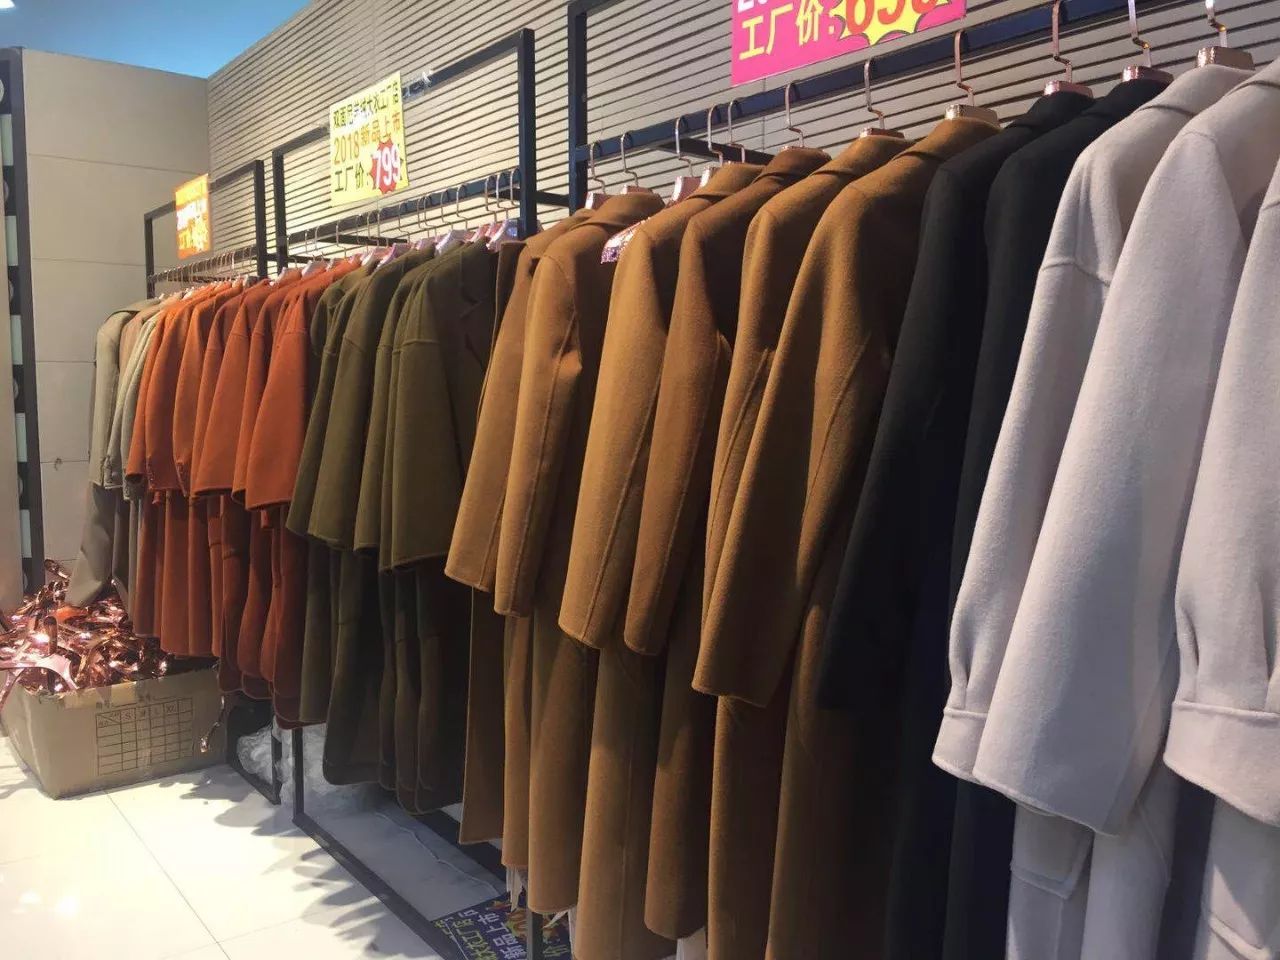 安宁伊皇购物中心双面羊绒大衣工厂直营店盛大开业,价值199元的羊绒